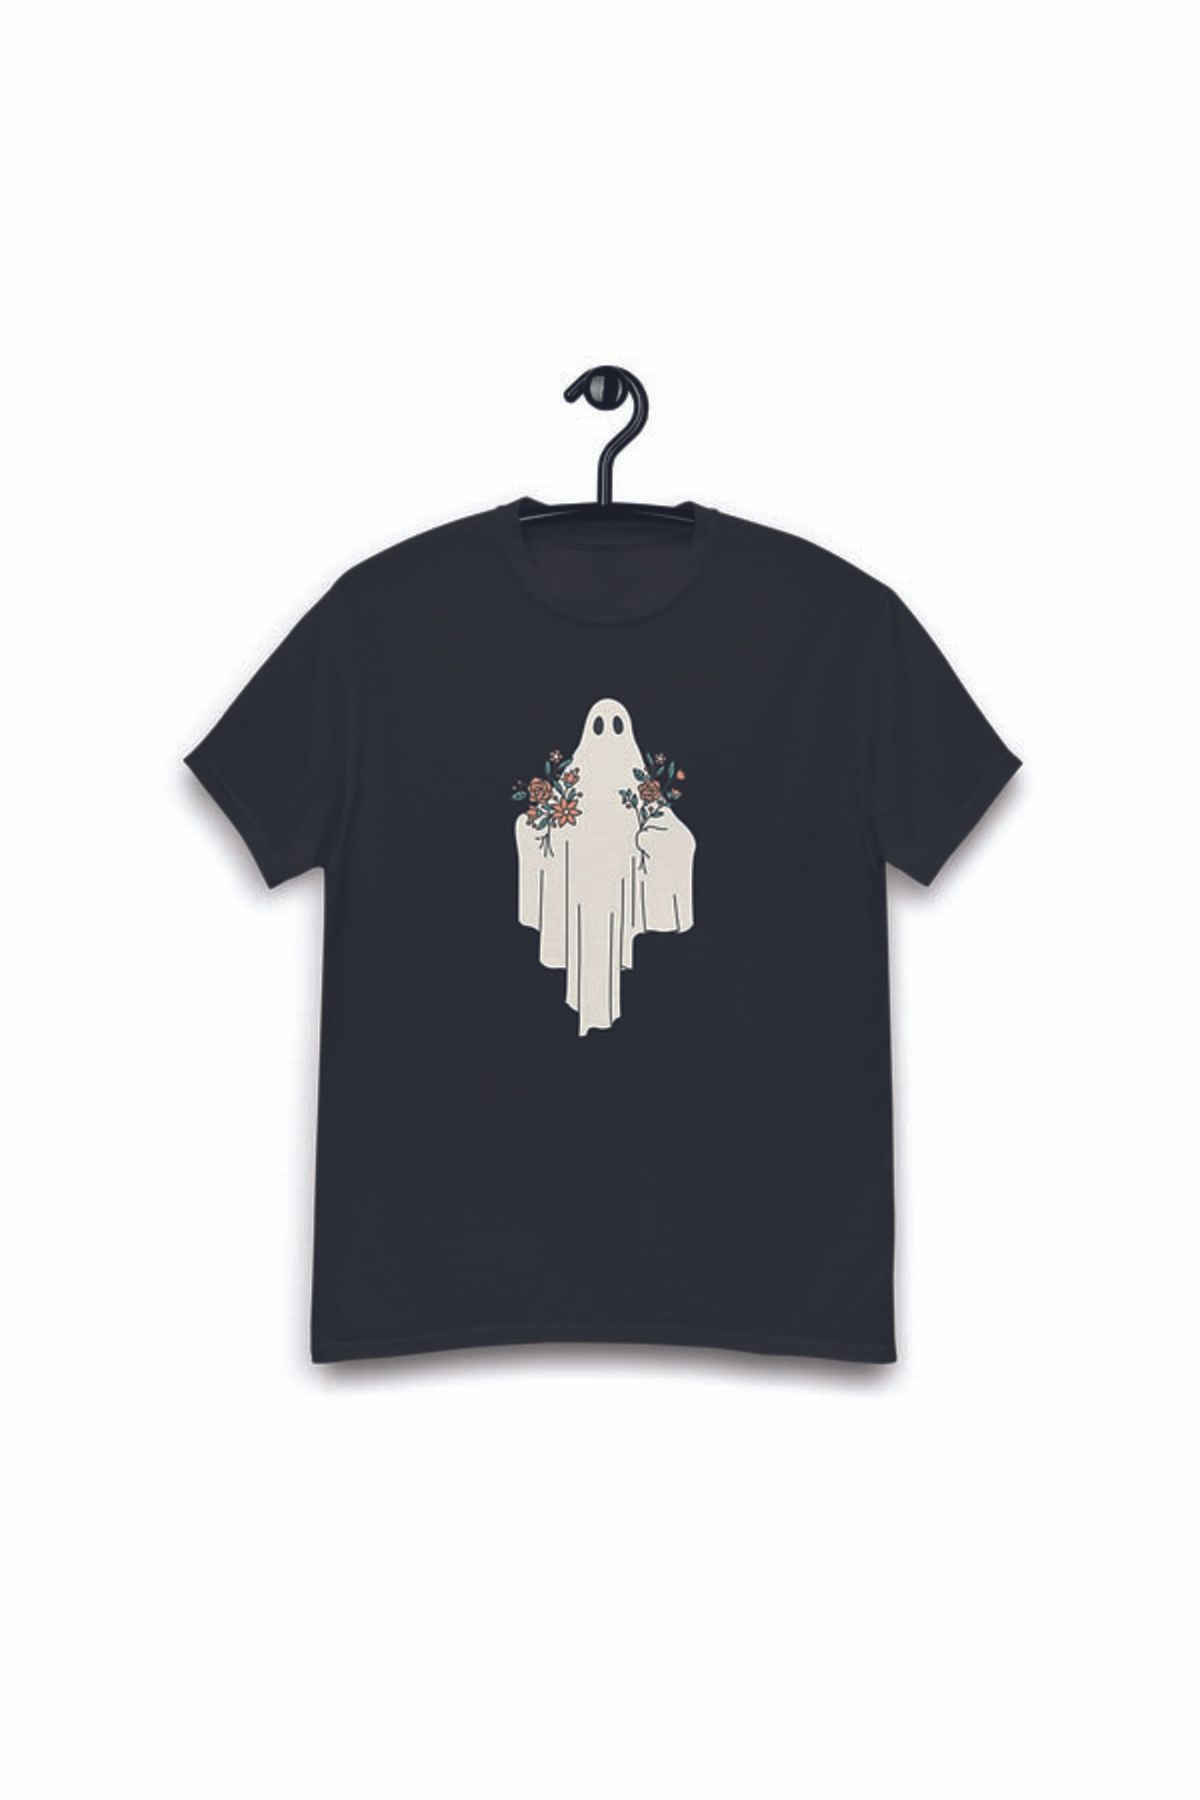 NOVVO Flowers From A Ghost Tasarım Baskılı Oversize T-shirt